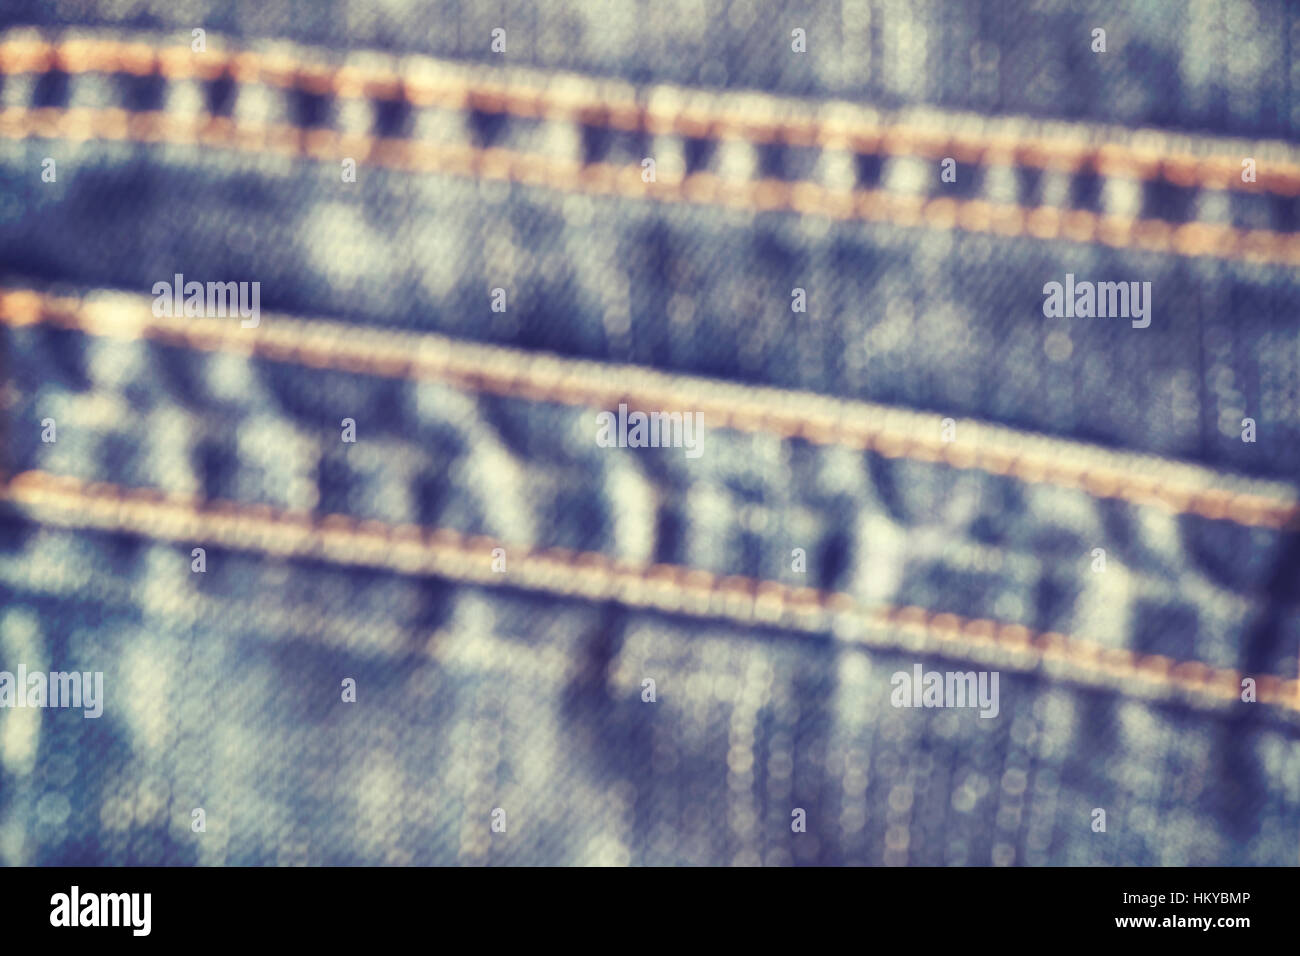 Retrò dai toni di colore sfumato close up foto di blue jeans tessuto, abstract background. Foto Stock